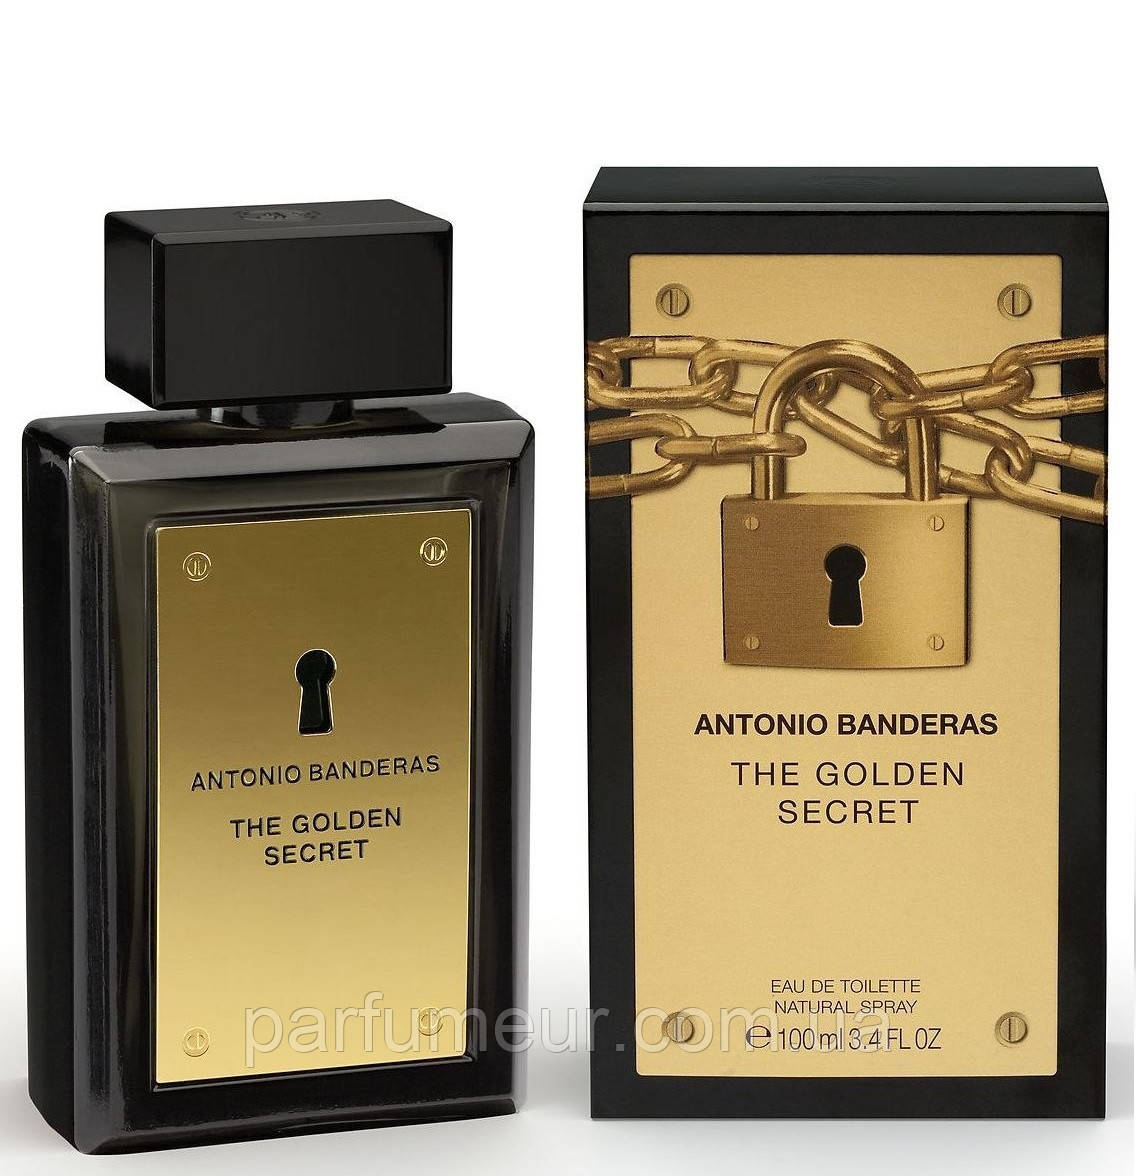 The Golden Secret Antonio Banderas eau de toilette 100ml